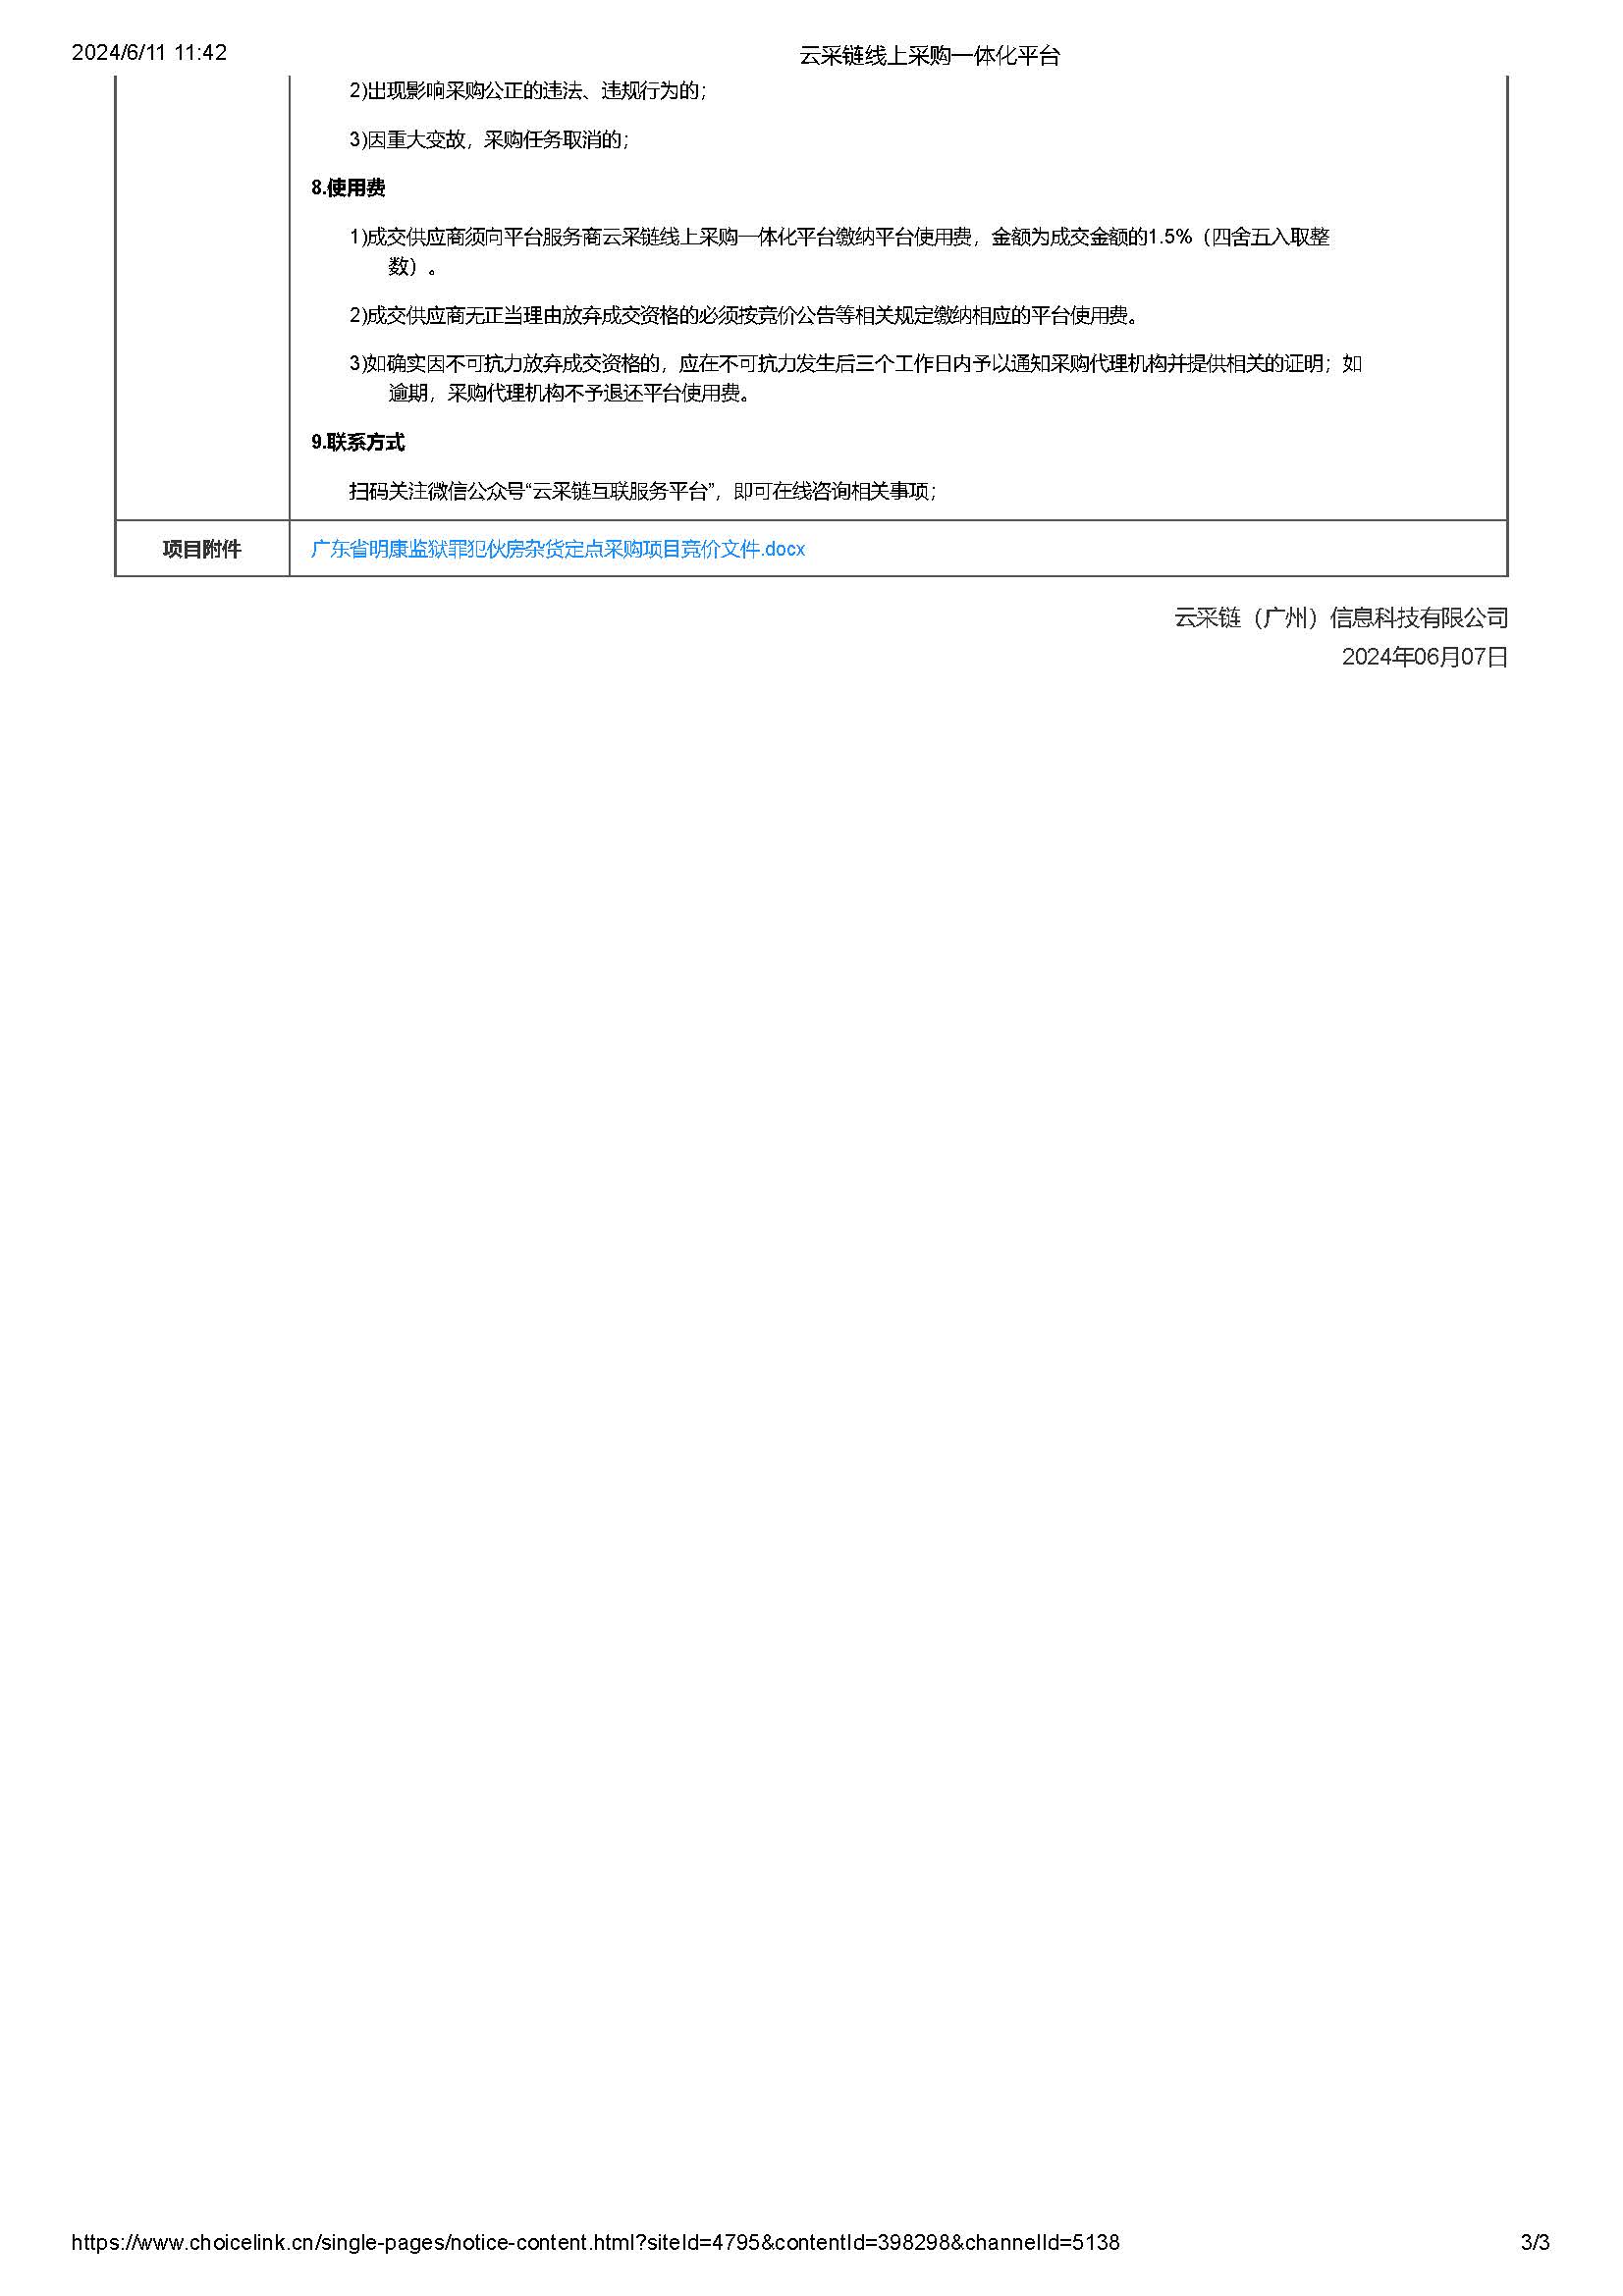 61.95广东省明康监狱罪犯伙房杂货定点采购项目竞价公告（第二次）_页面_3.jpg